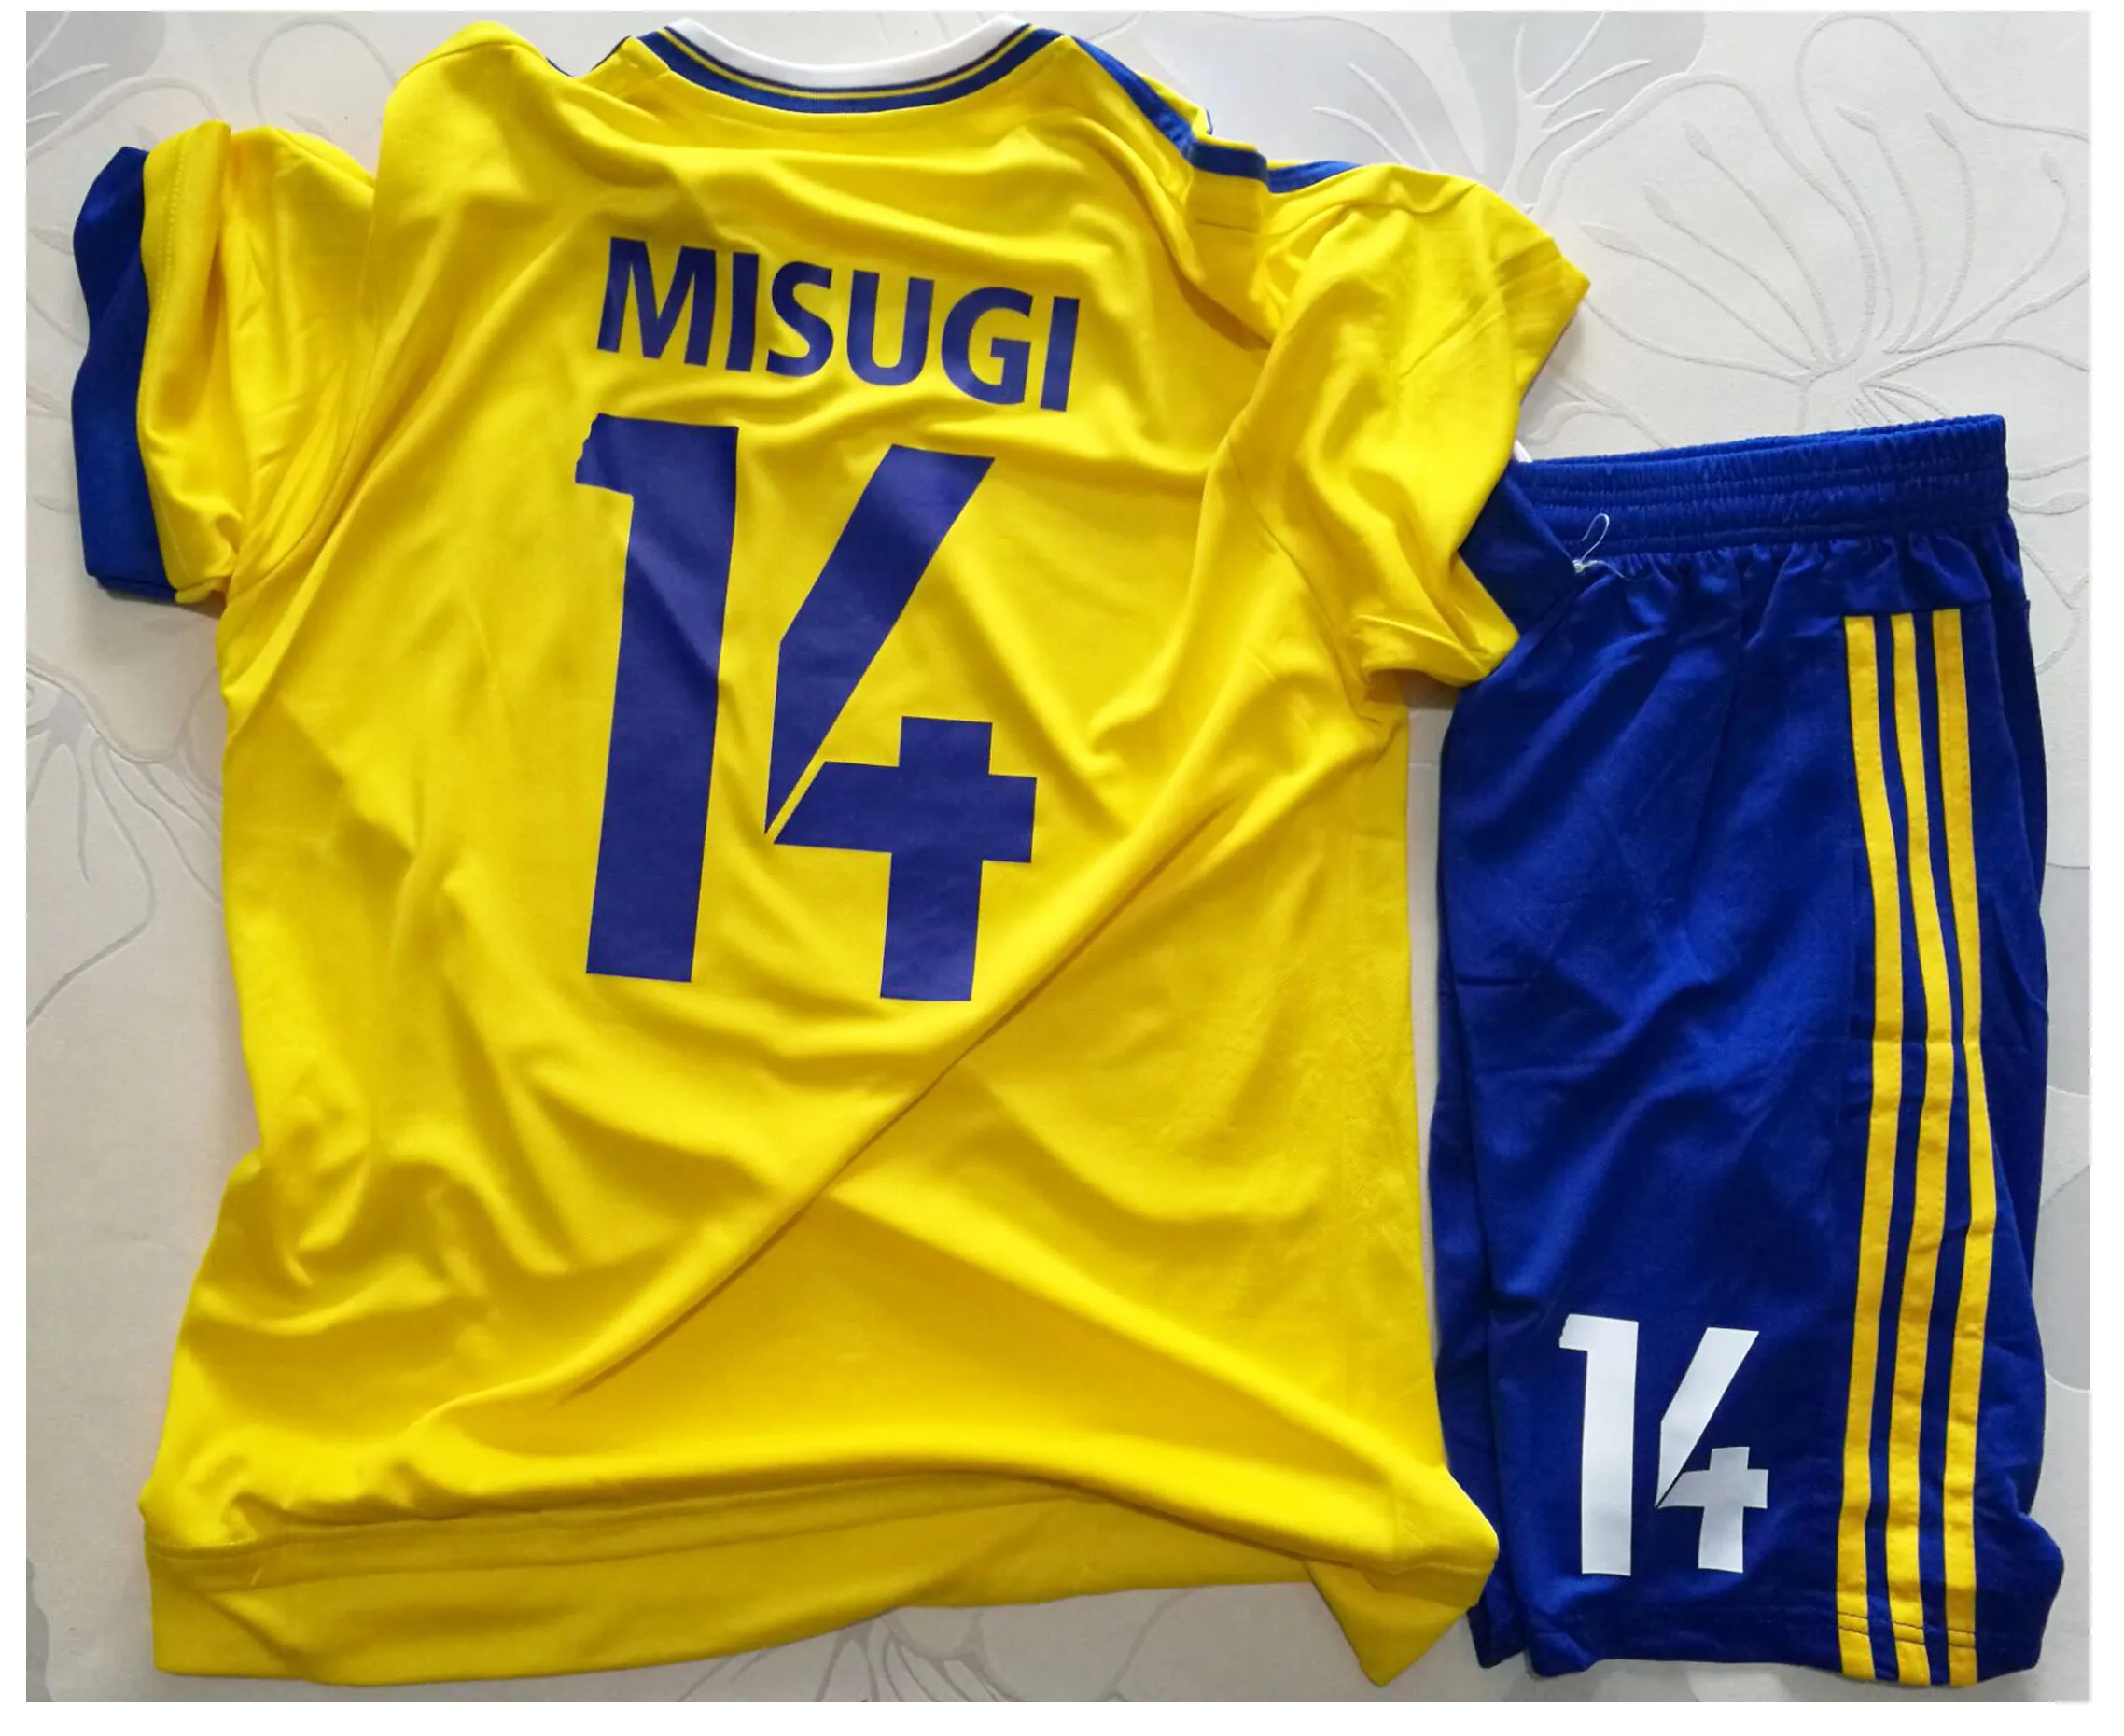 Капитан Tsubasa Мусаси школа MFC Одежда наборы № 14 Jun Misugi Косплей футбол Джерси для взрослых и детей